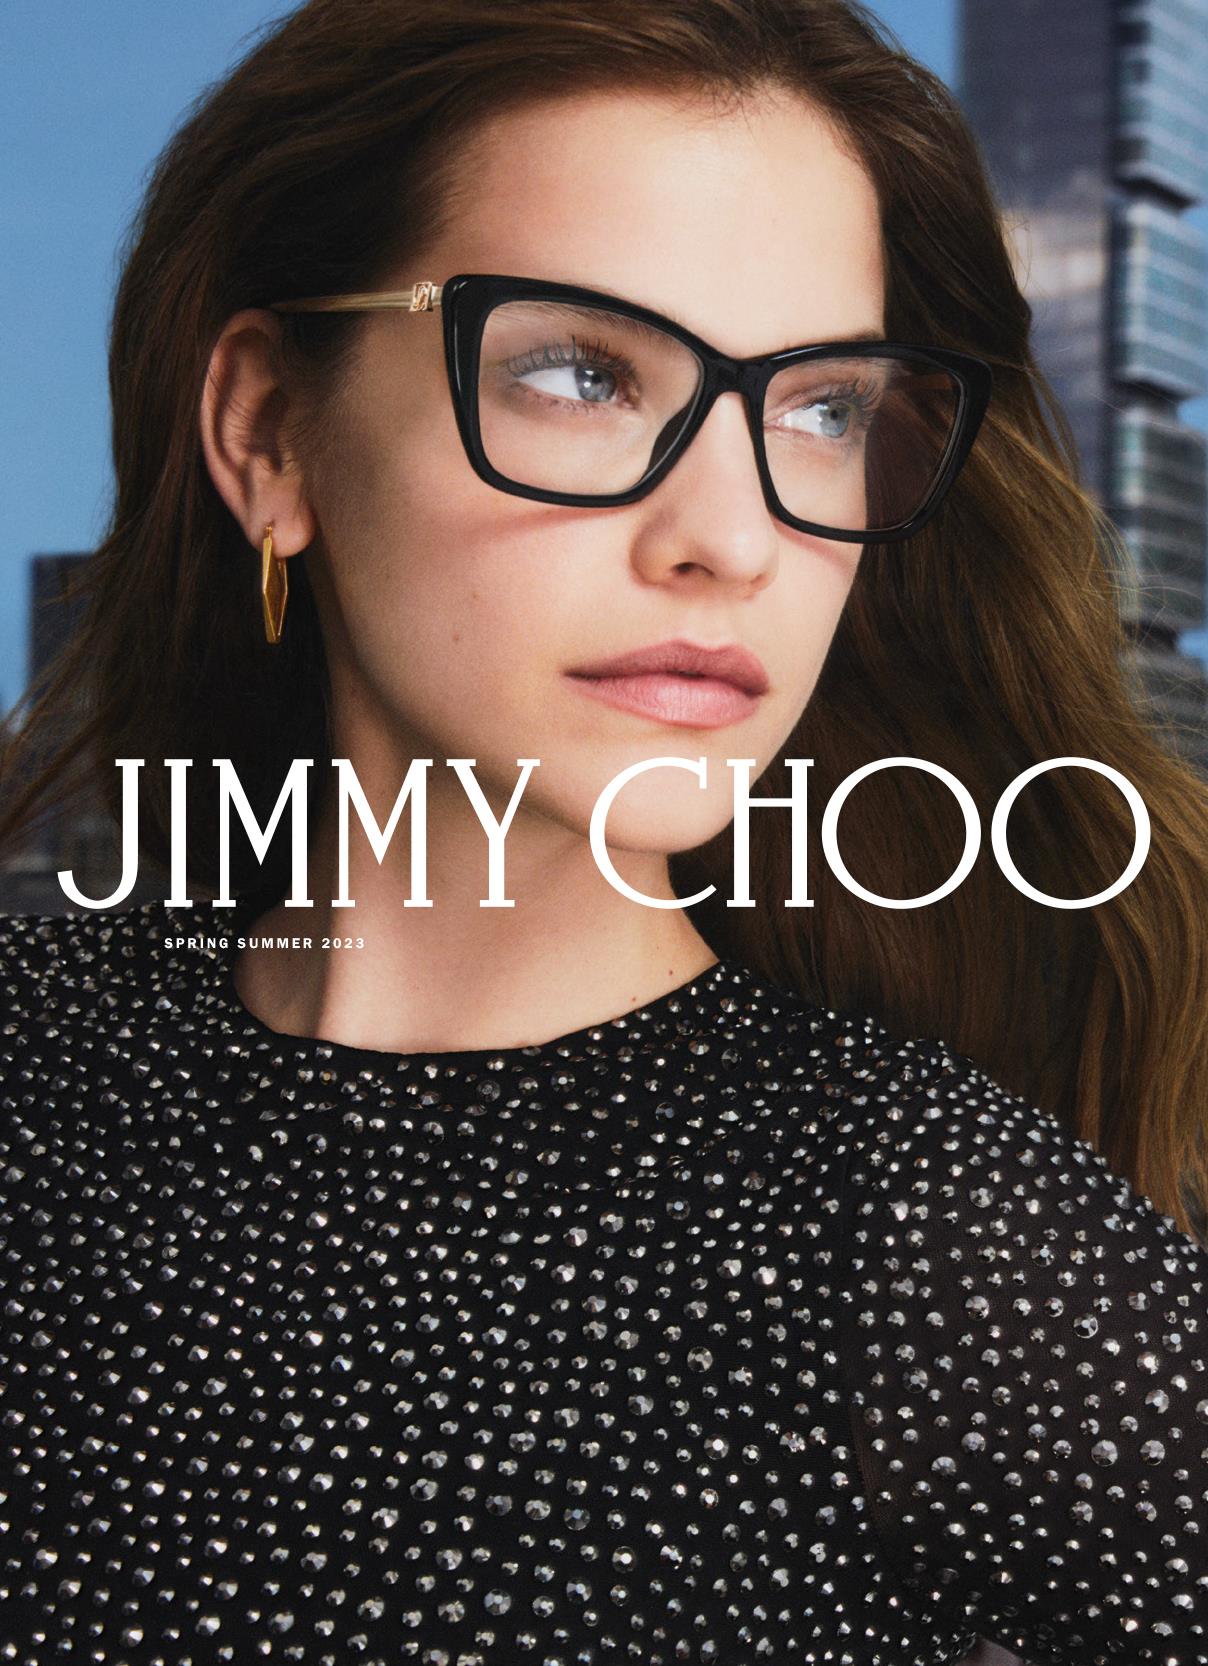 Jimmy Choo Optical Brand Image